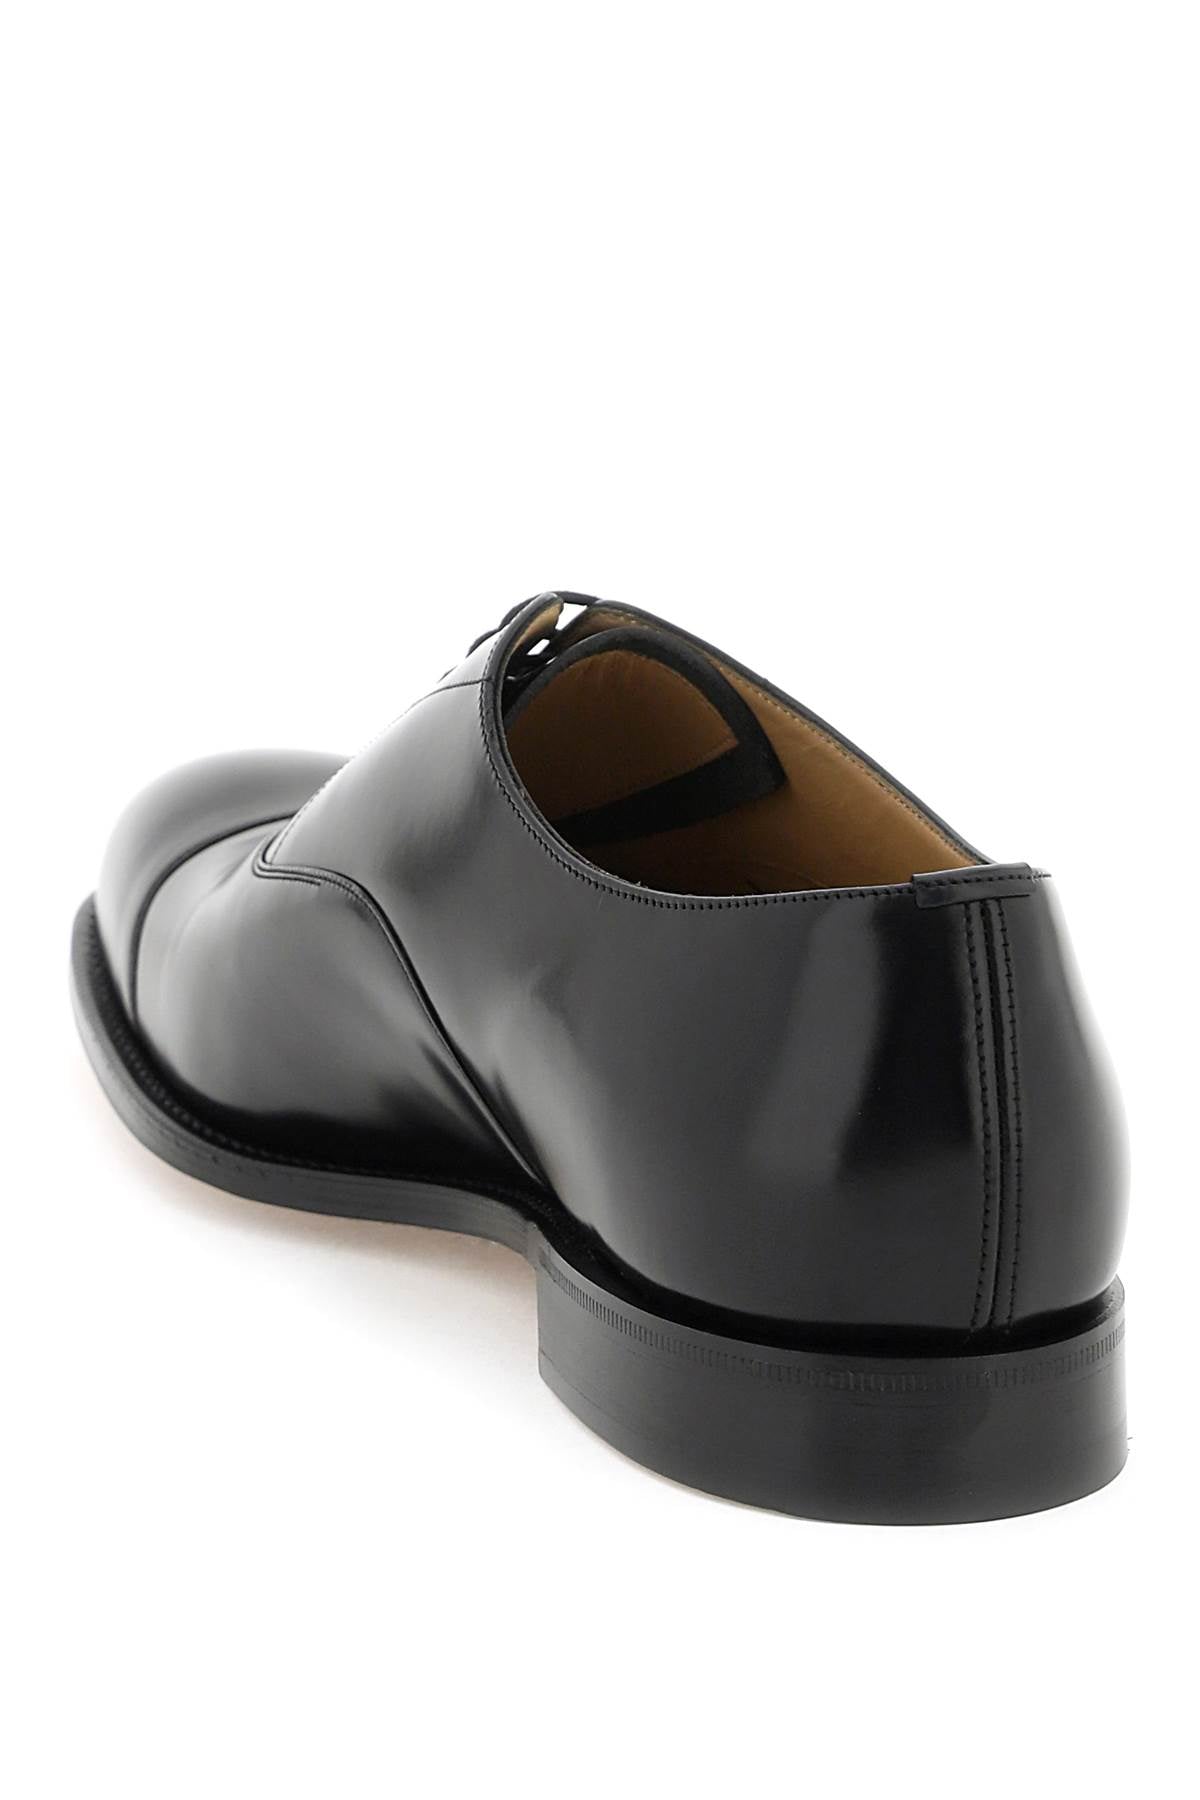 أحذية موكاسين جلدية سوداء للرجال - FW23